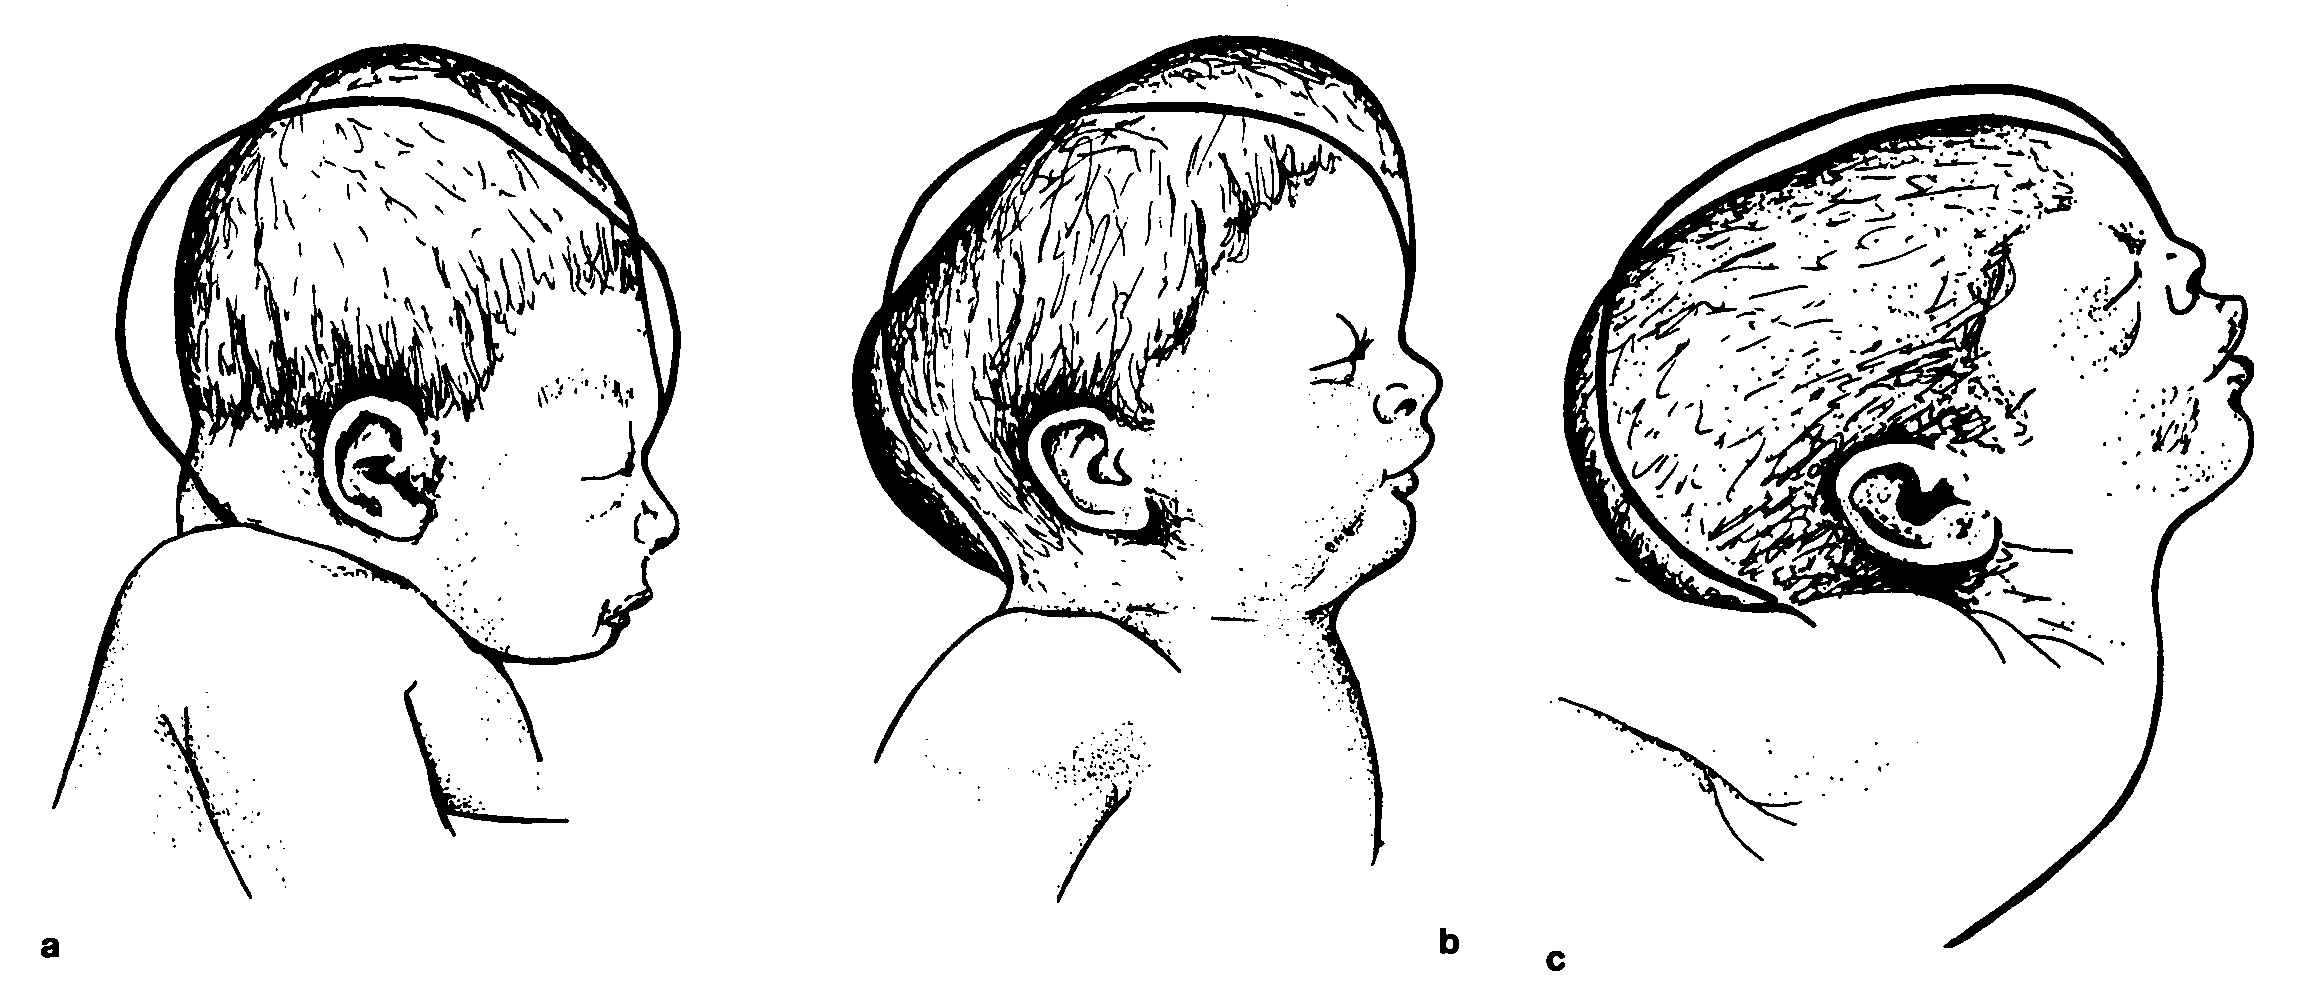 Косте 6 месяцев. Долихоцефалическая форма головы новорожденного. Долихоцефалическая форма головы у плода. Кефалогематома пункция. Рахит облысение затылка.